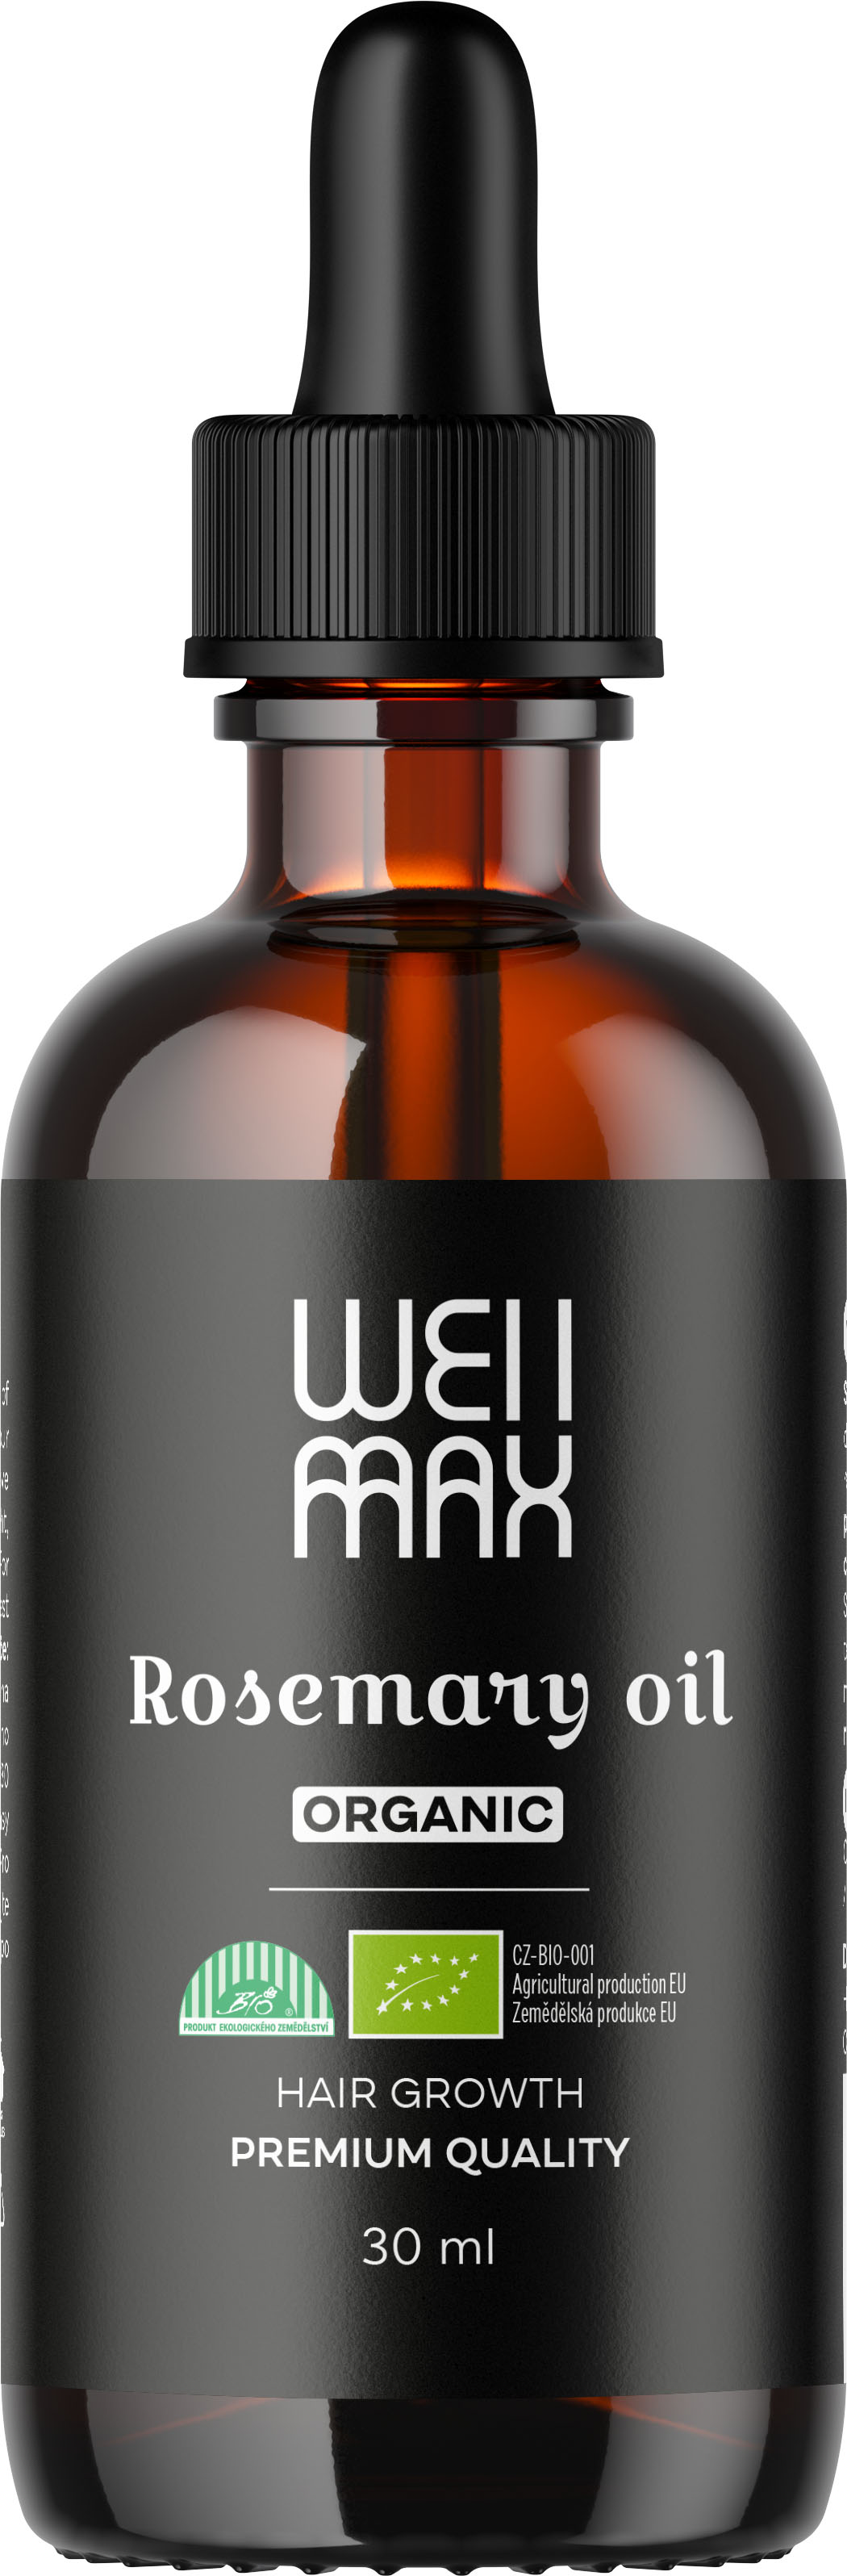 WellMax Rosemary oil, rozmarýnový olej, BIO, 30 ml Olej z rozmarýnu lékařského pro posílení vlasů a pro regeneraci vlasové pokožky, *CZ-BIO-001 certifikát